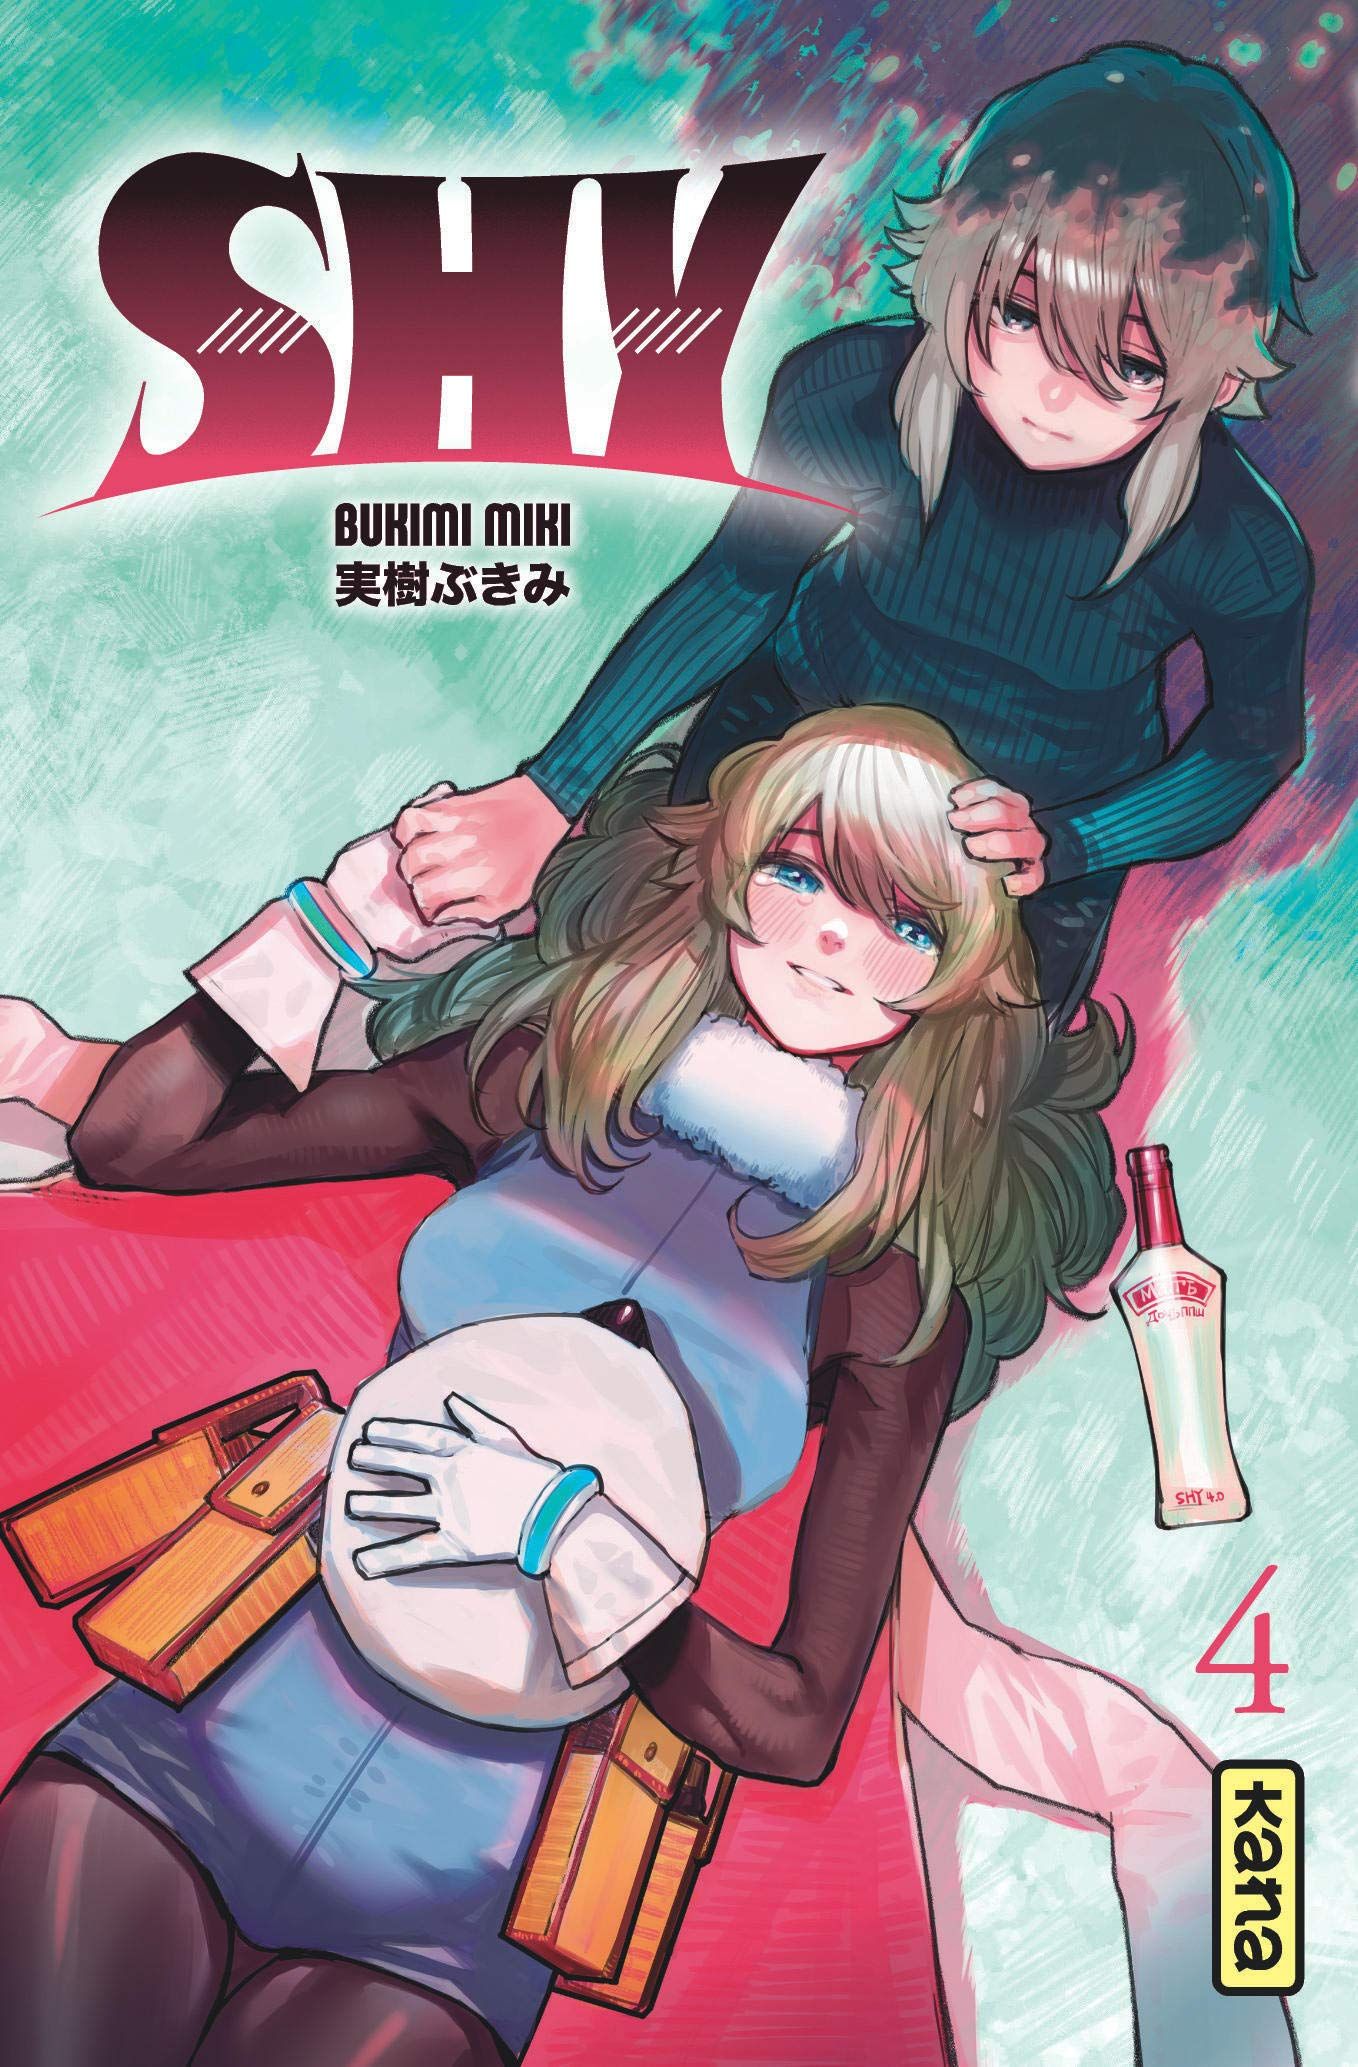 Date de sortie Juin 2021 par manga (en cours d'ajout) Shy-4-kana